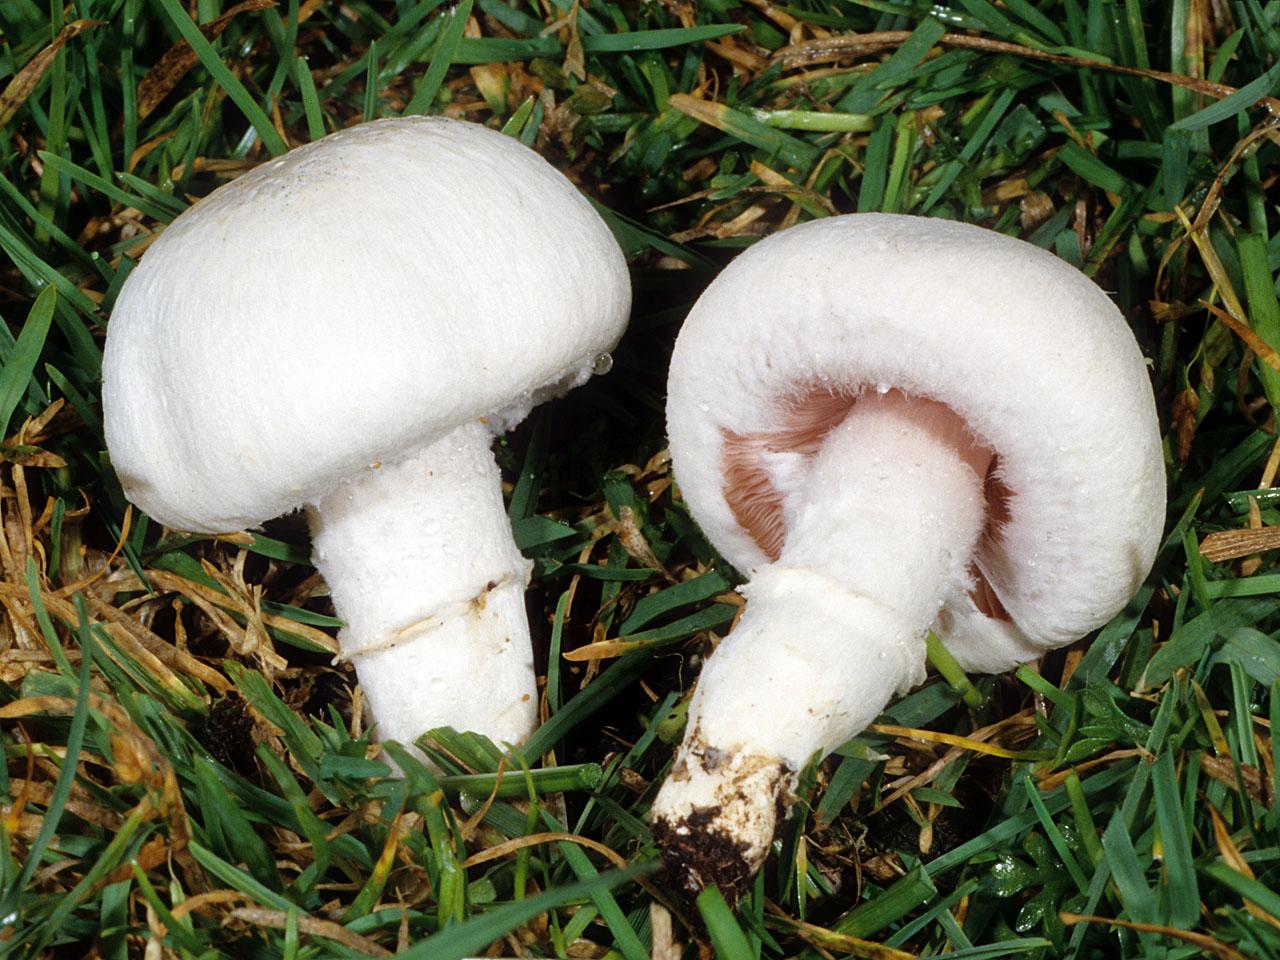 武夷山国家公园再添2个新物种-细腿小蘑菇和武夷山小蘑菇 - 首页幻灯 - 东南网旅游频道